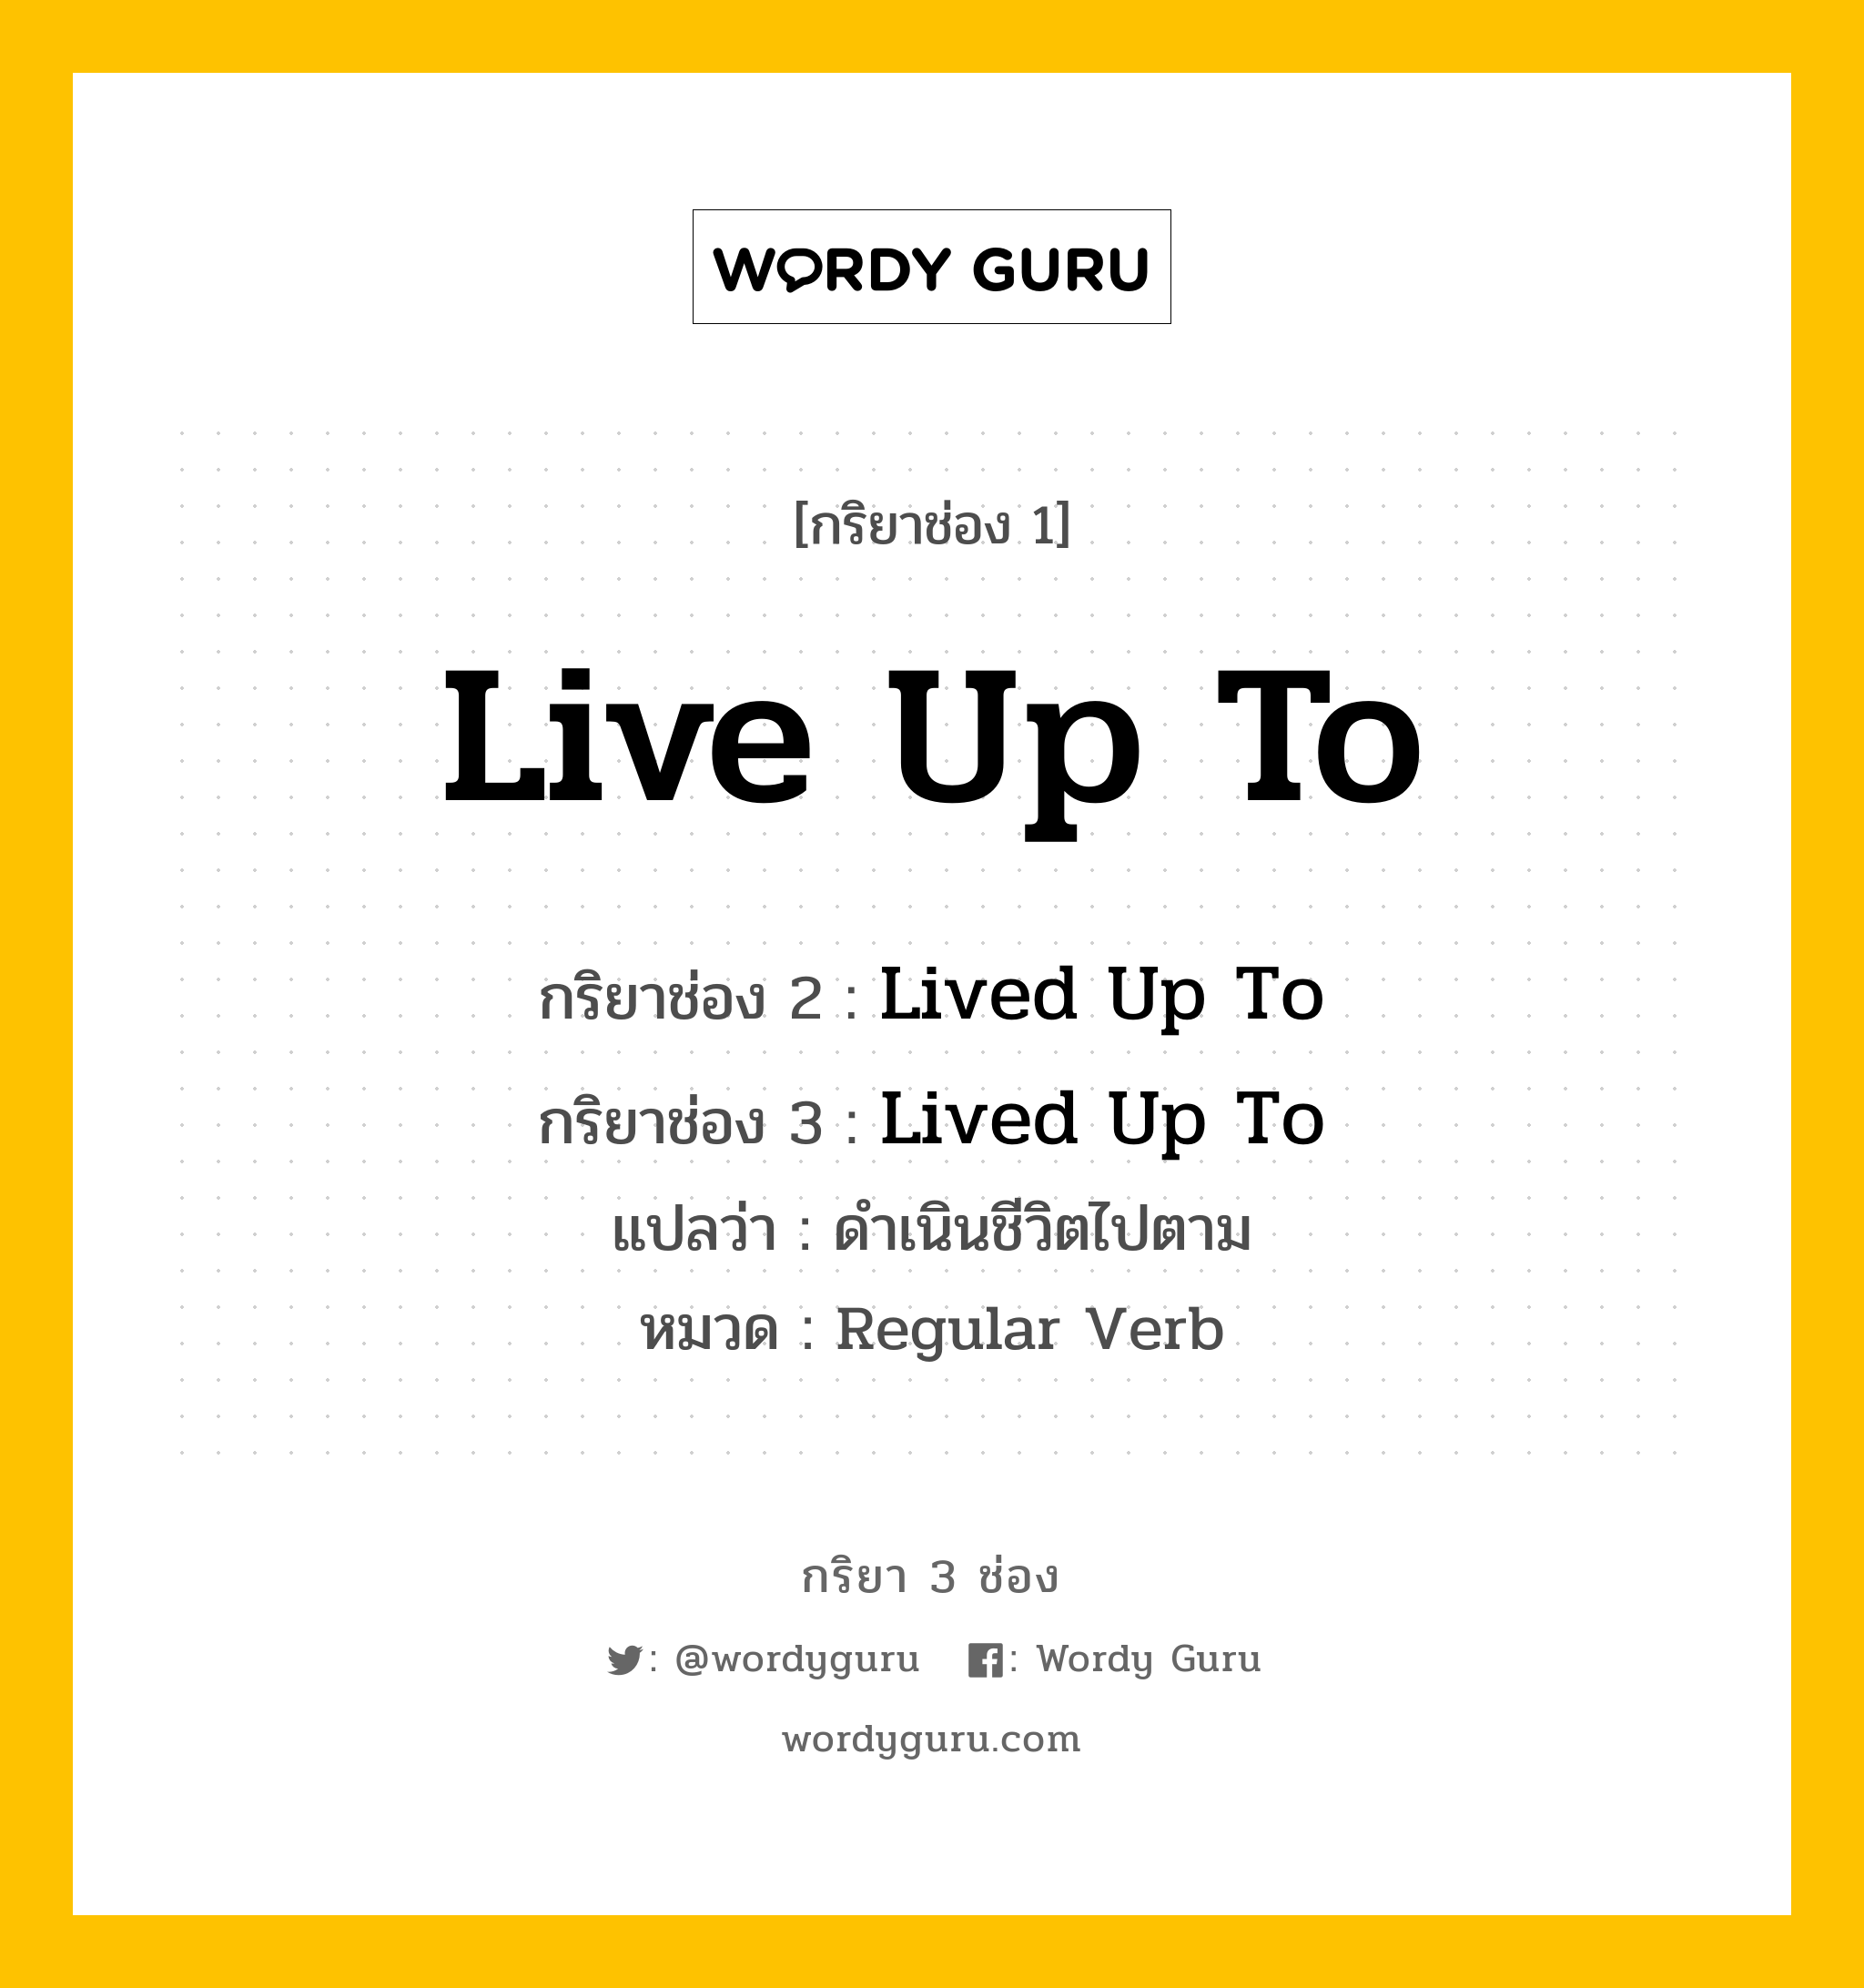 กริยา 3 ช่อง: Live Up To ช่อง 2 Live Up To ช่อง 3 คืออะไร, กริยาช่อง 1 Live Up To กริยาช่อง 2 Lived Up To กริยาช่อง 3 Lived Up To แปลว่า ดำเนินชีวิตไปตาม หมวด Regular Verb หมวด Regular Verb